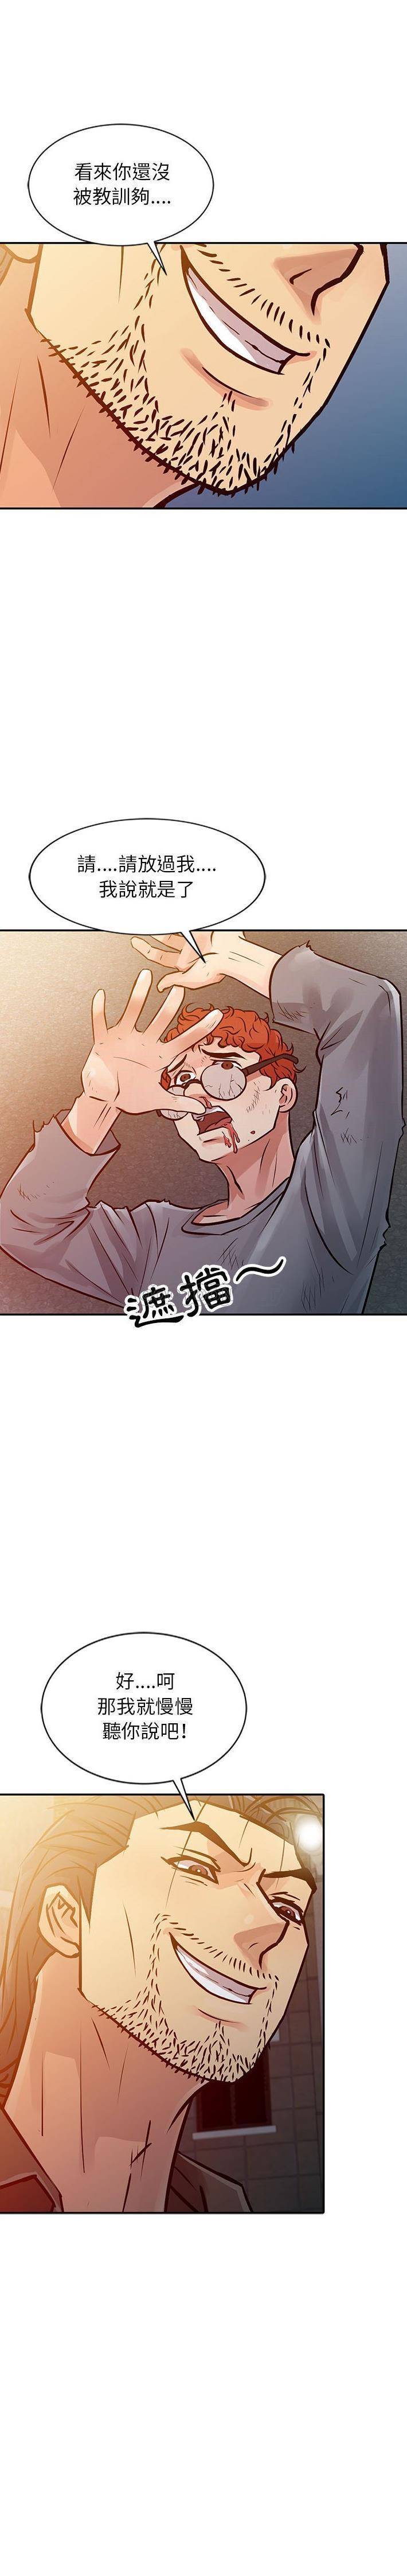 韩国污漫画 征服的滋味 第10话 13